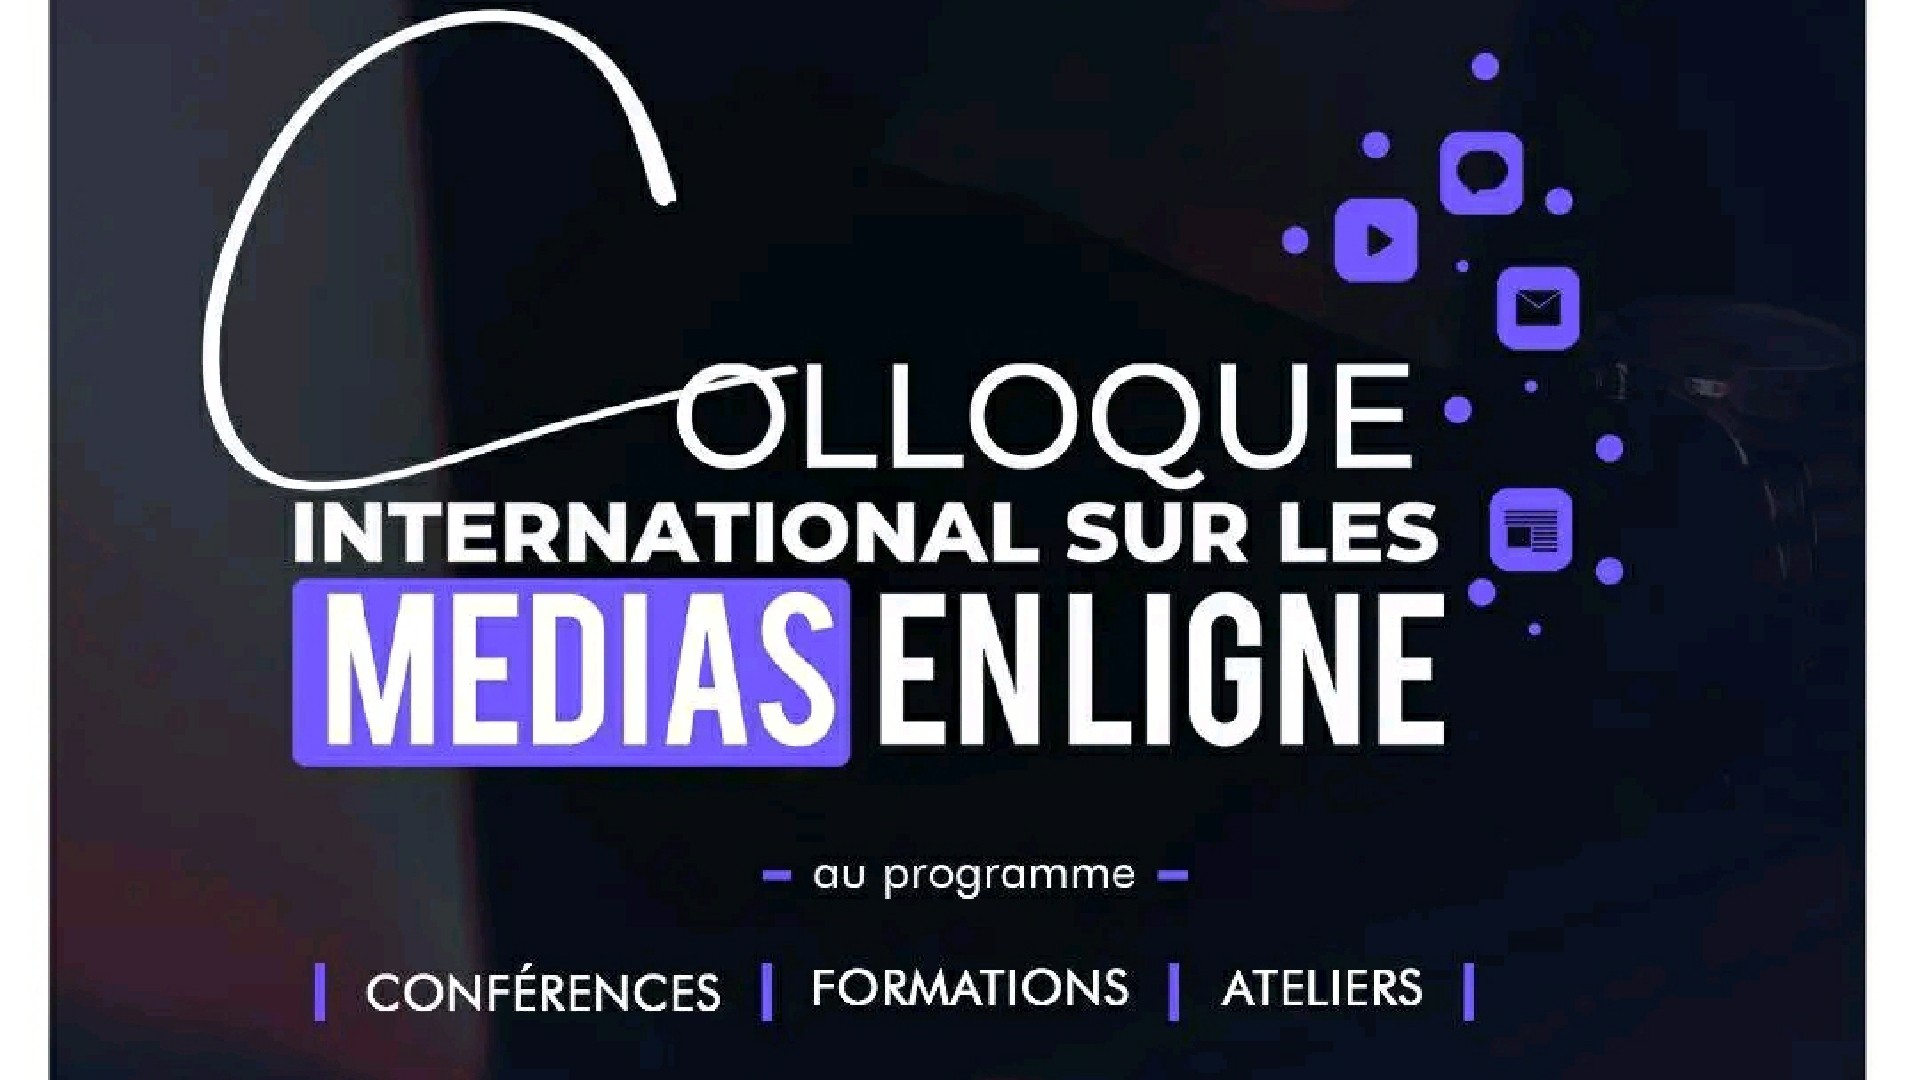 Un colloque sur les médias en ligne se tient à Yaoundé dès le 29 septembre 2022